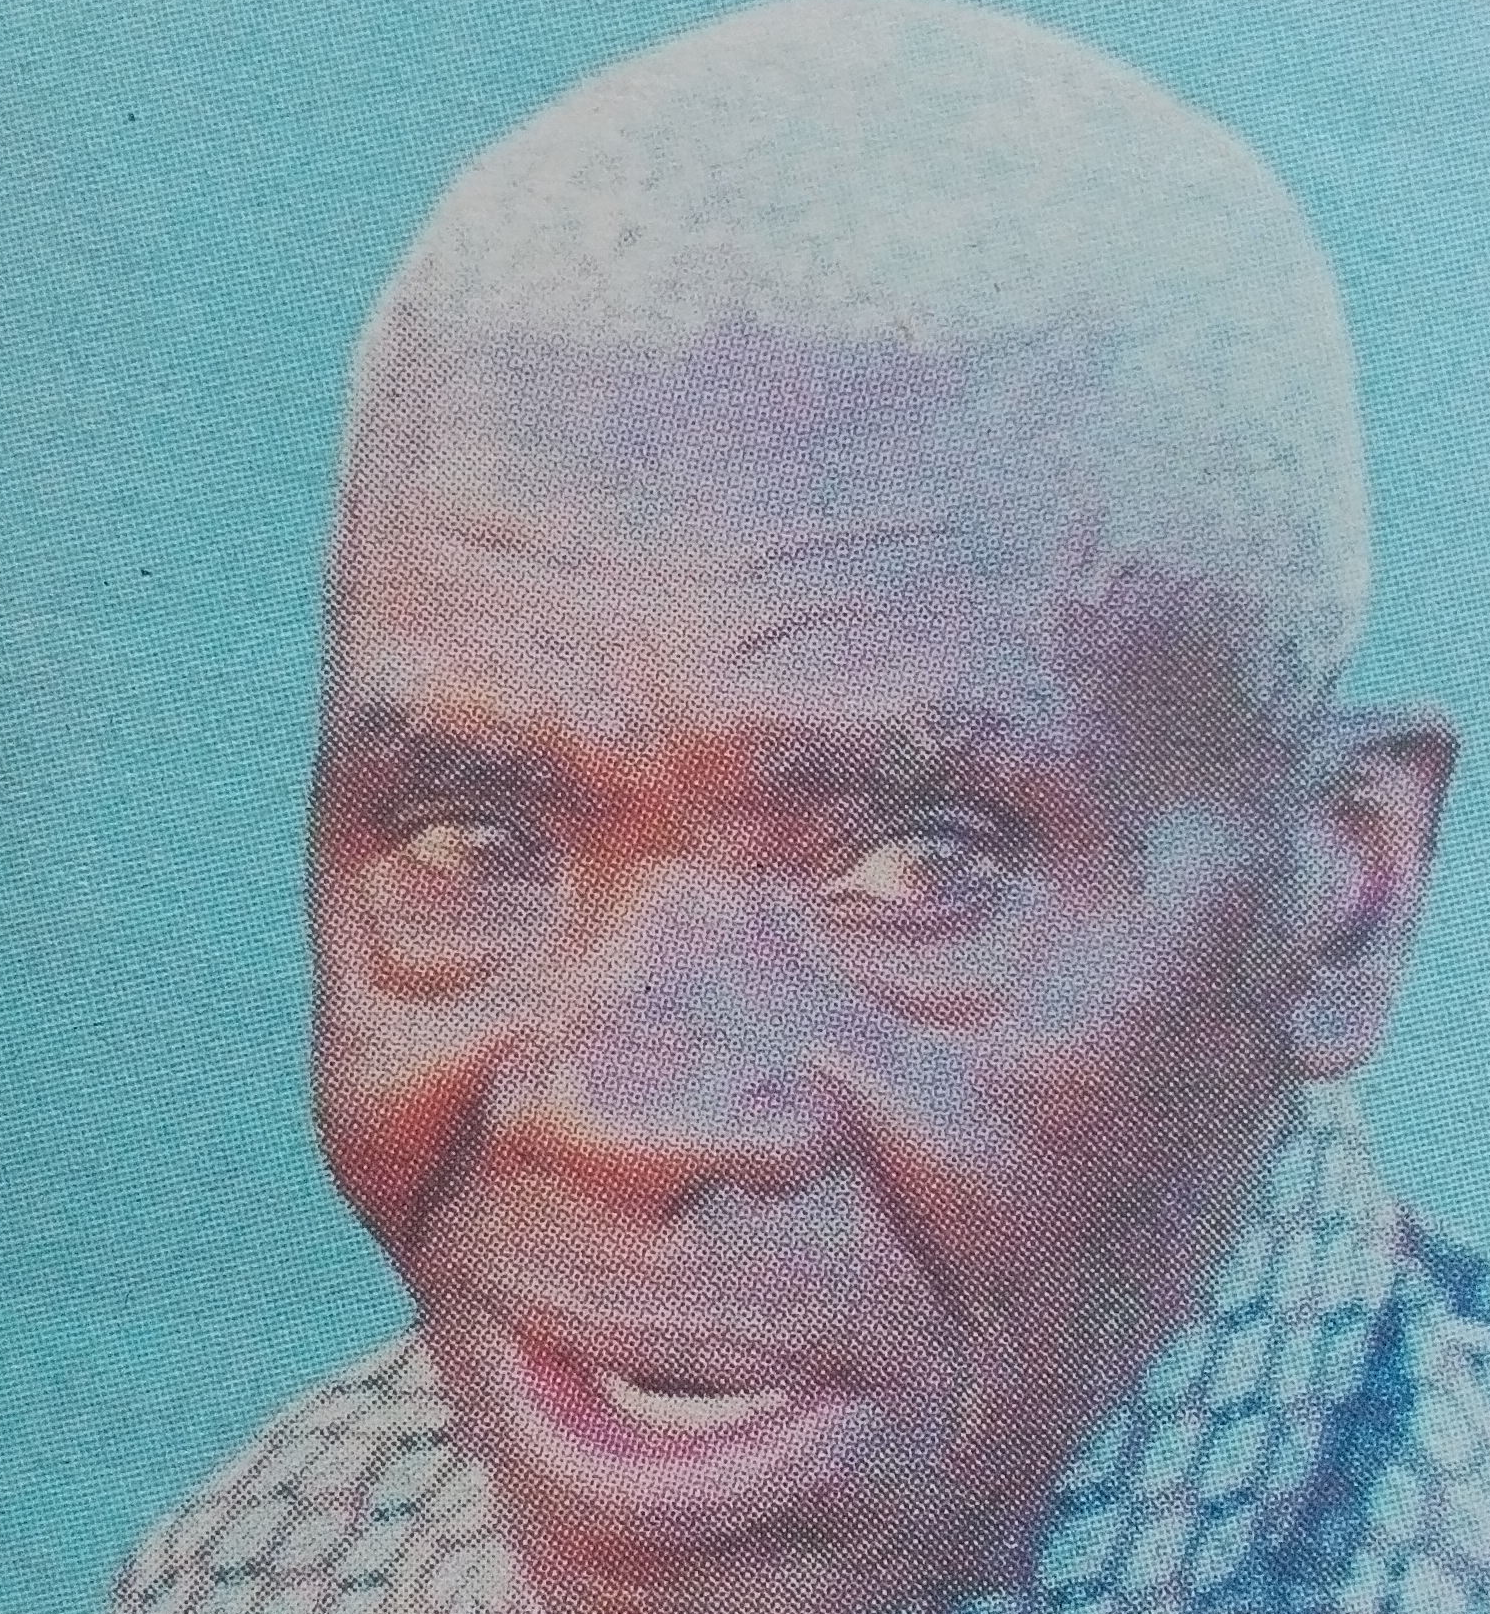 Obituary Image of Mwalimu Joseph Kabubo